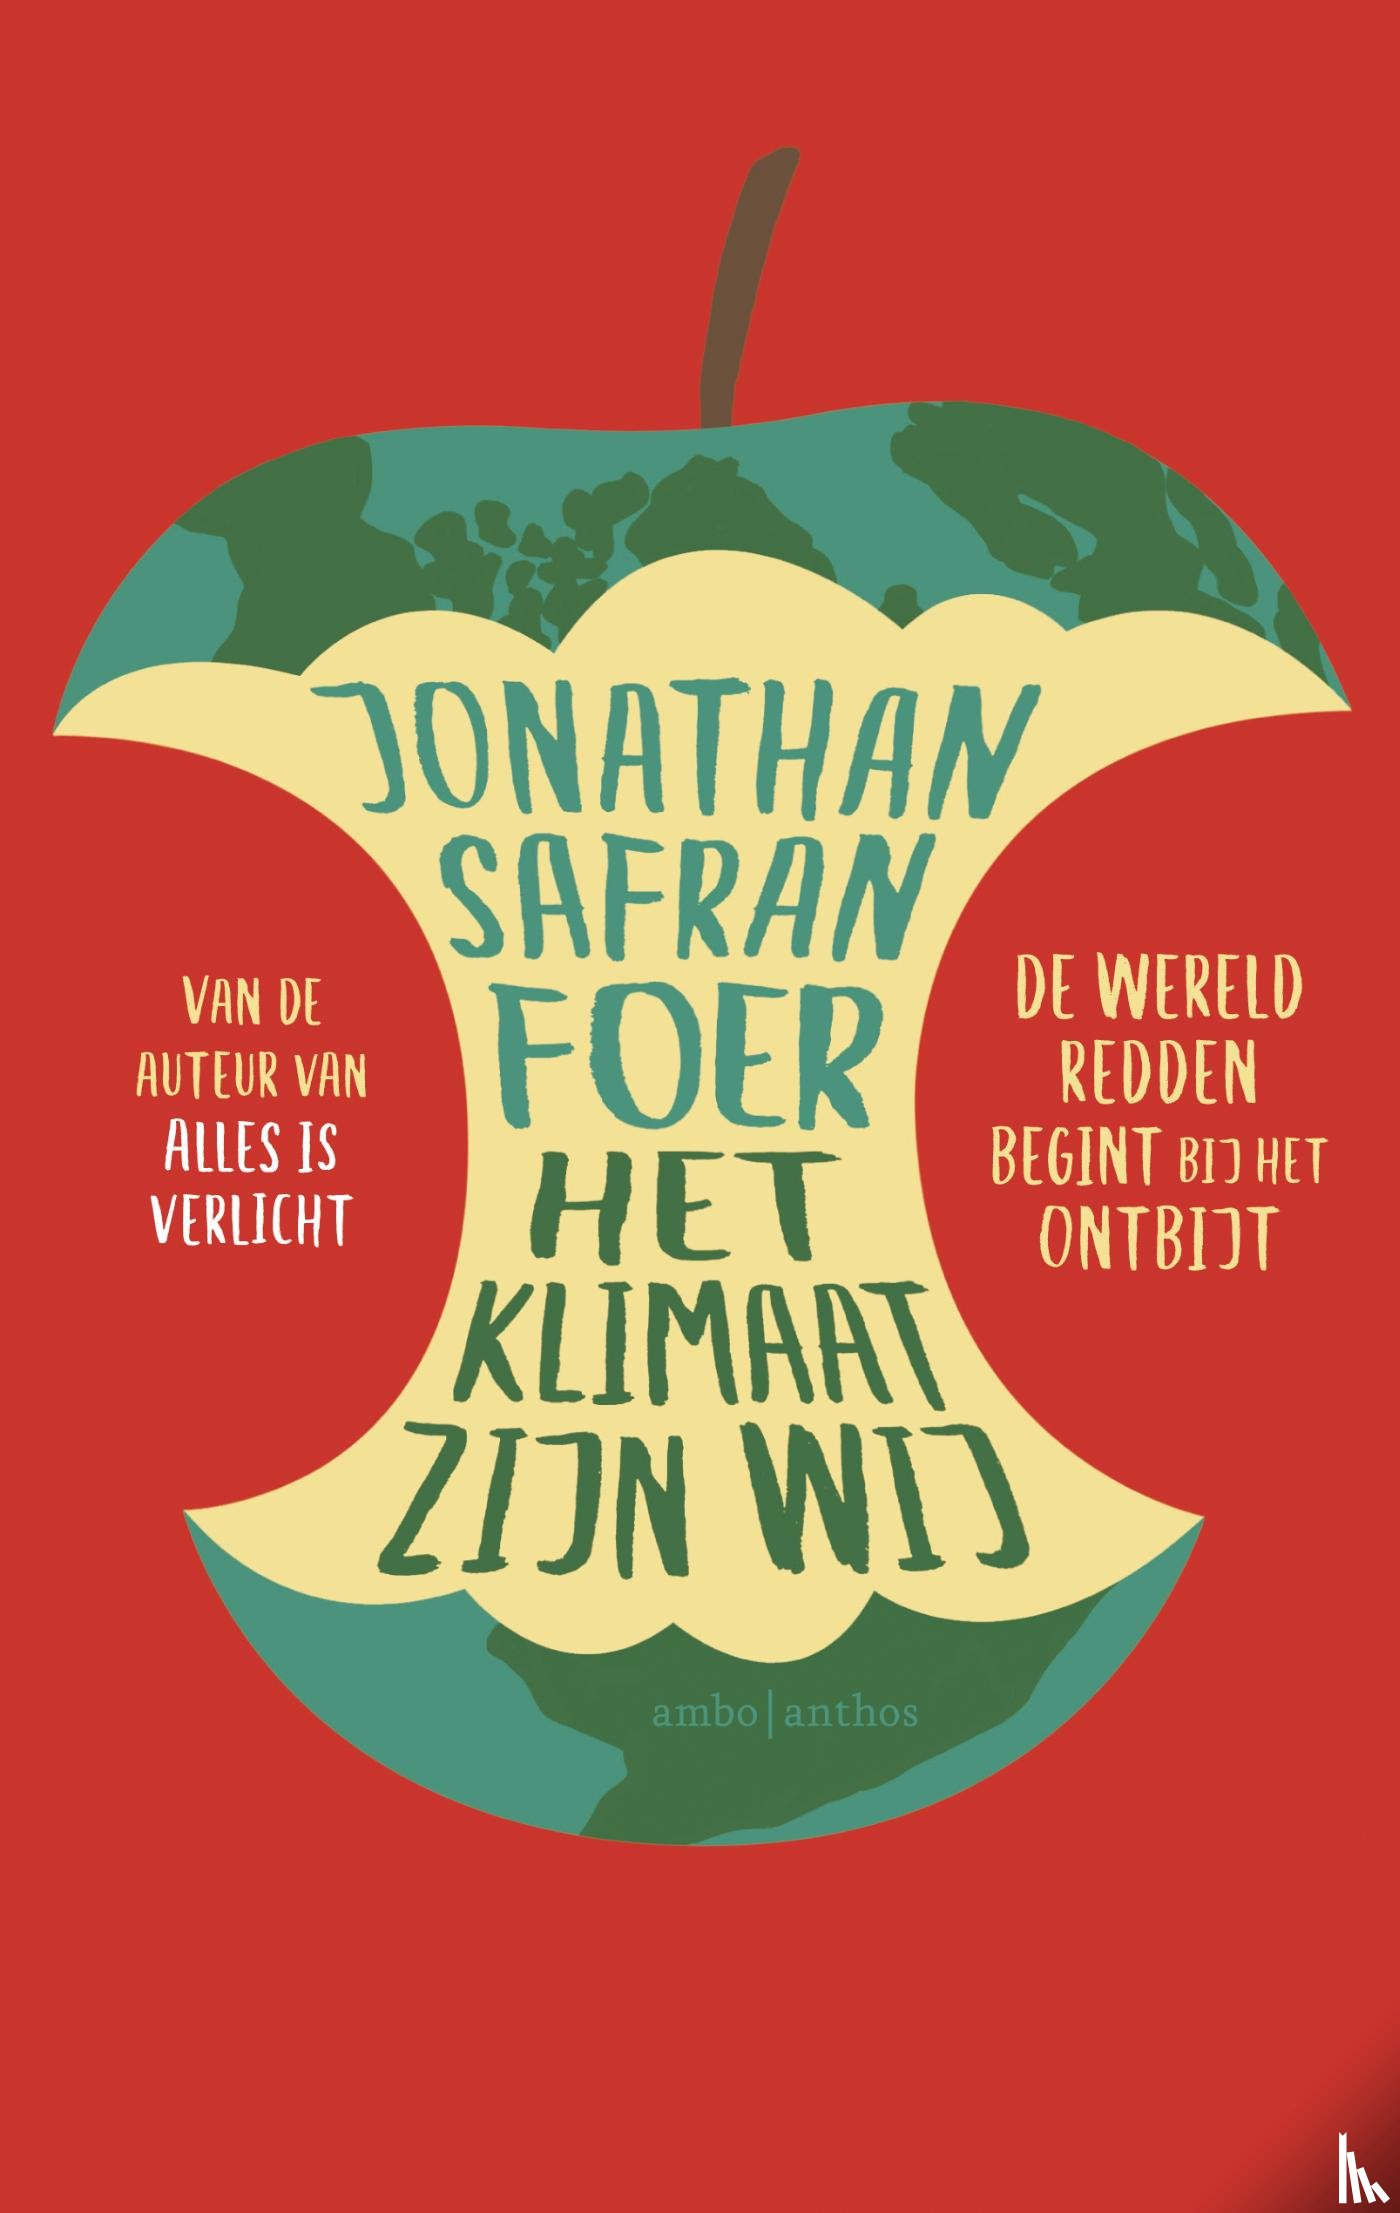 Foer, Jonathan Safran - Het klimaat zijn wij